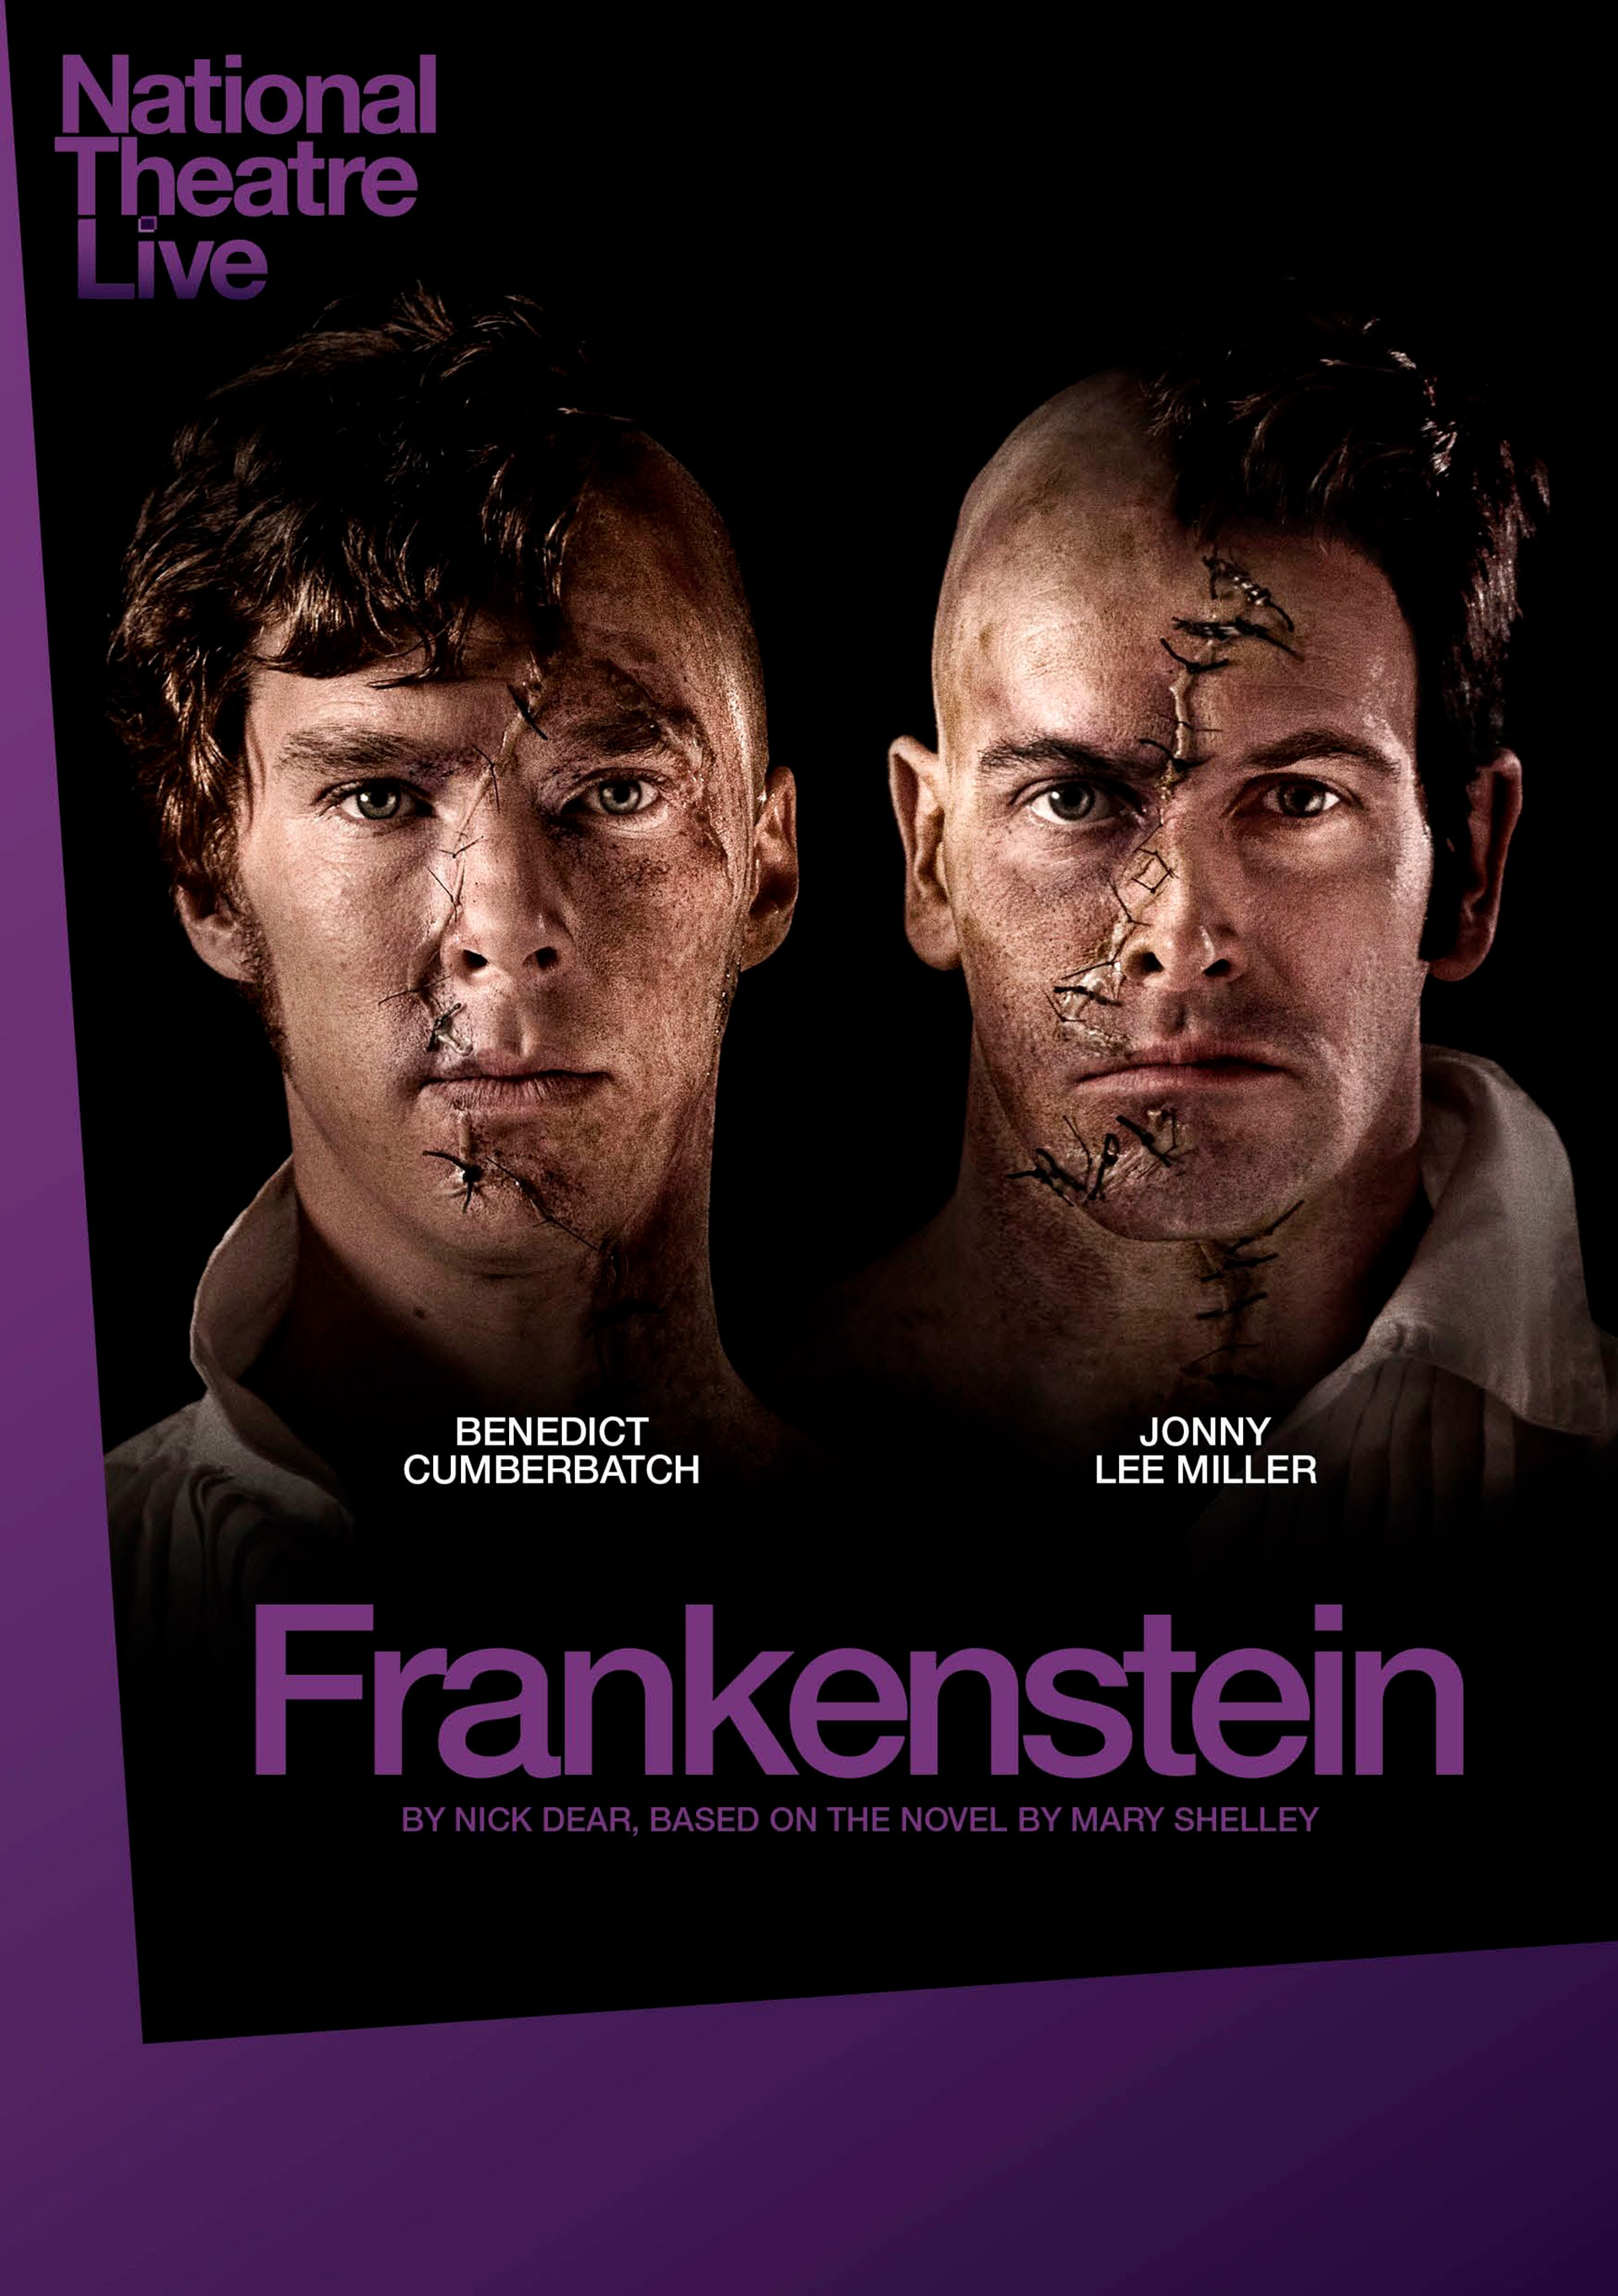 Junto a Jonny Lee Miller, se intercambiaron los roles entre el Dr. Frankenstein y su monstruosa creación. Fue una obra teatral que terminó proyectándose en los cines 